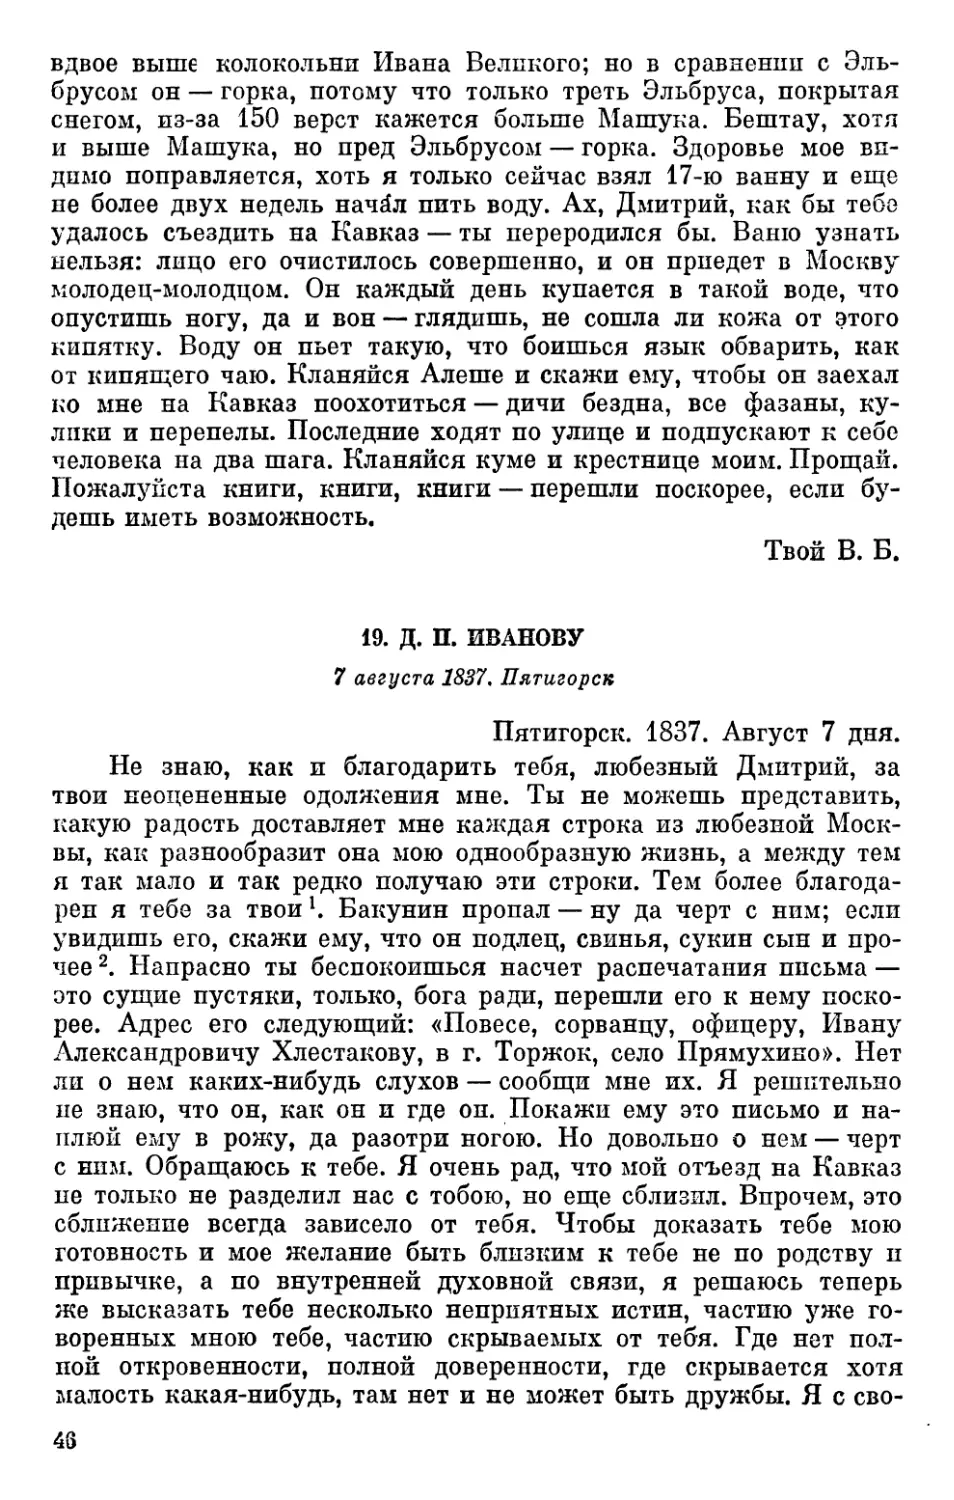 19. Д. П. Иванову. 7 августа 1837